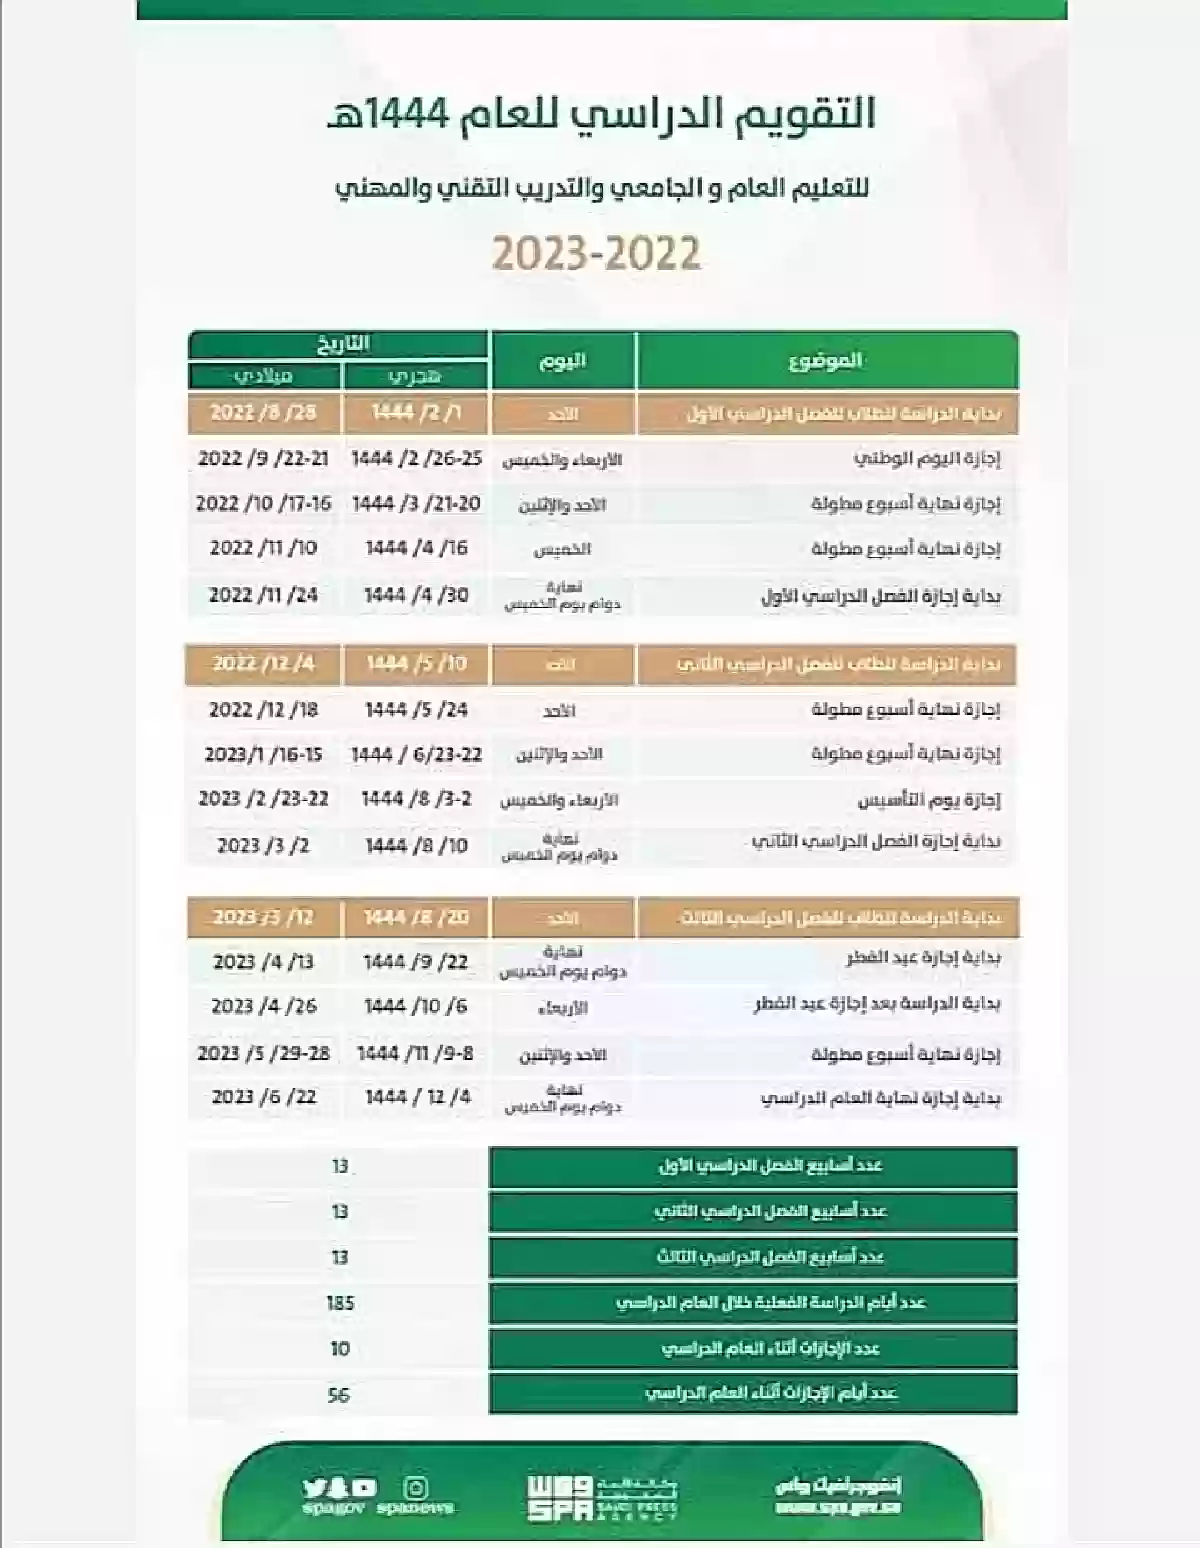 بشكل رسمي الوزارة تعلن موعد بداية الفصل الثالث في السعودية وإجازة الفصل الدراسي الثاني